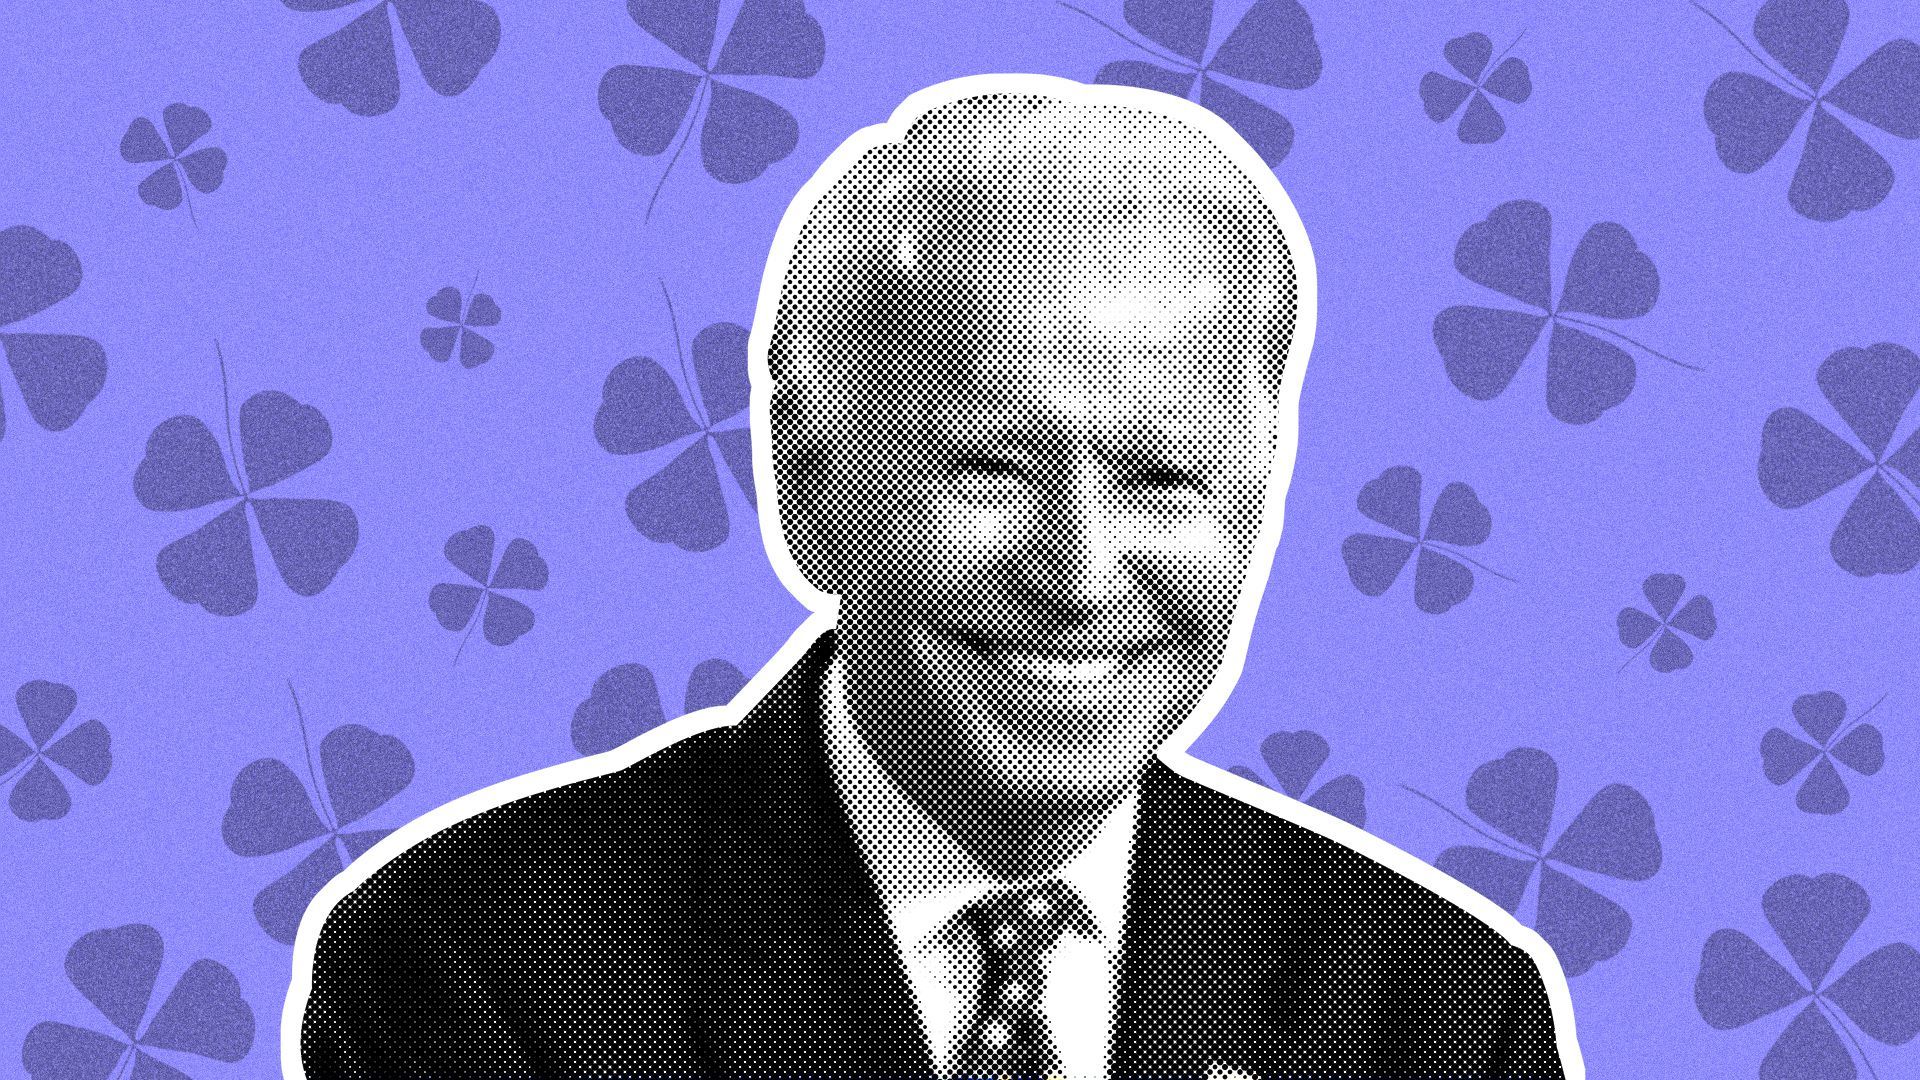 Illustration of Joe Biden on a four-leaf clover background